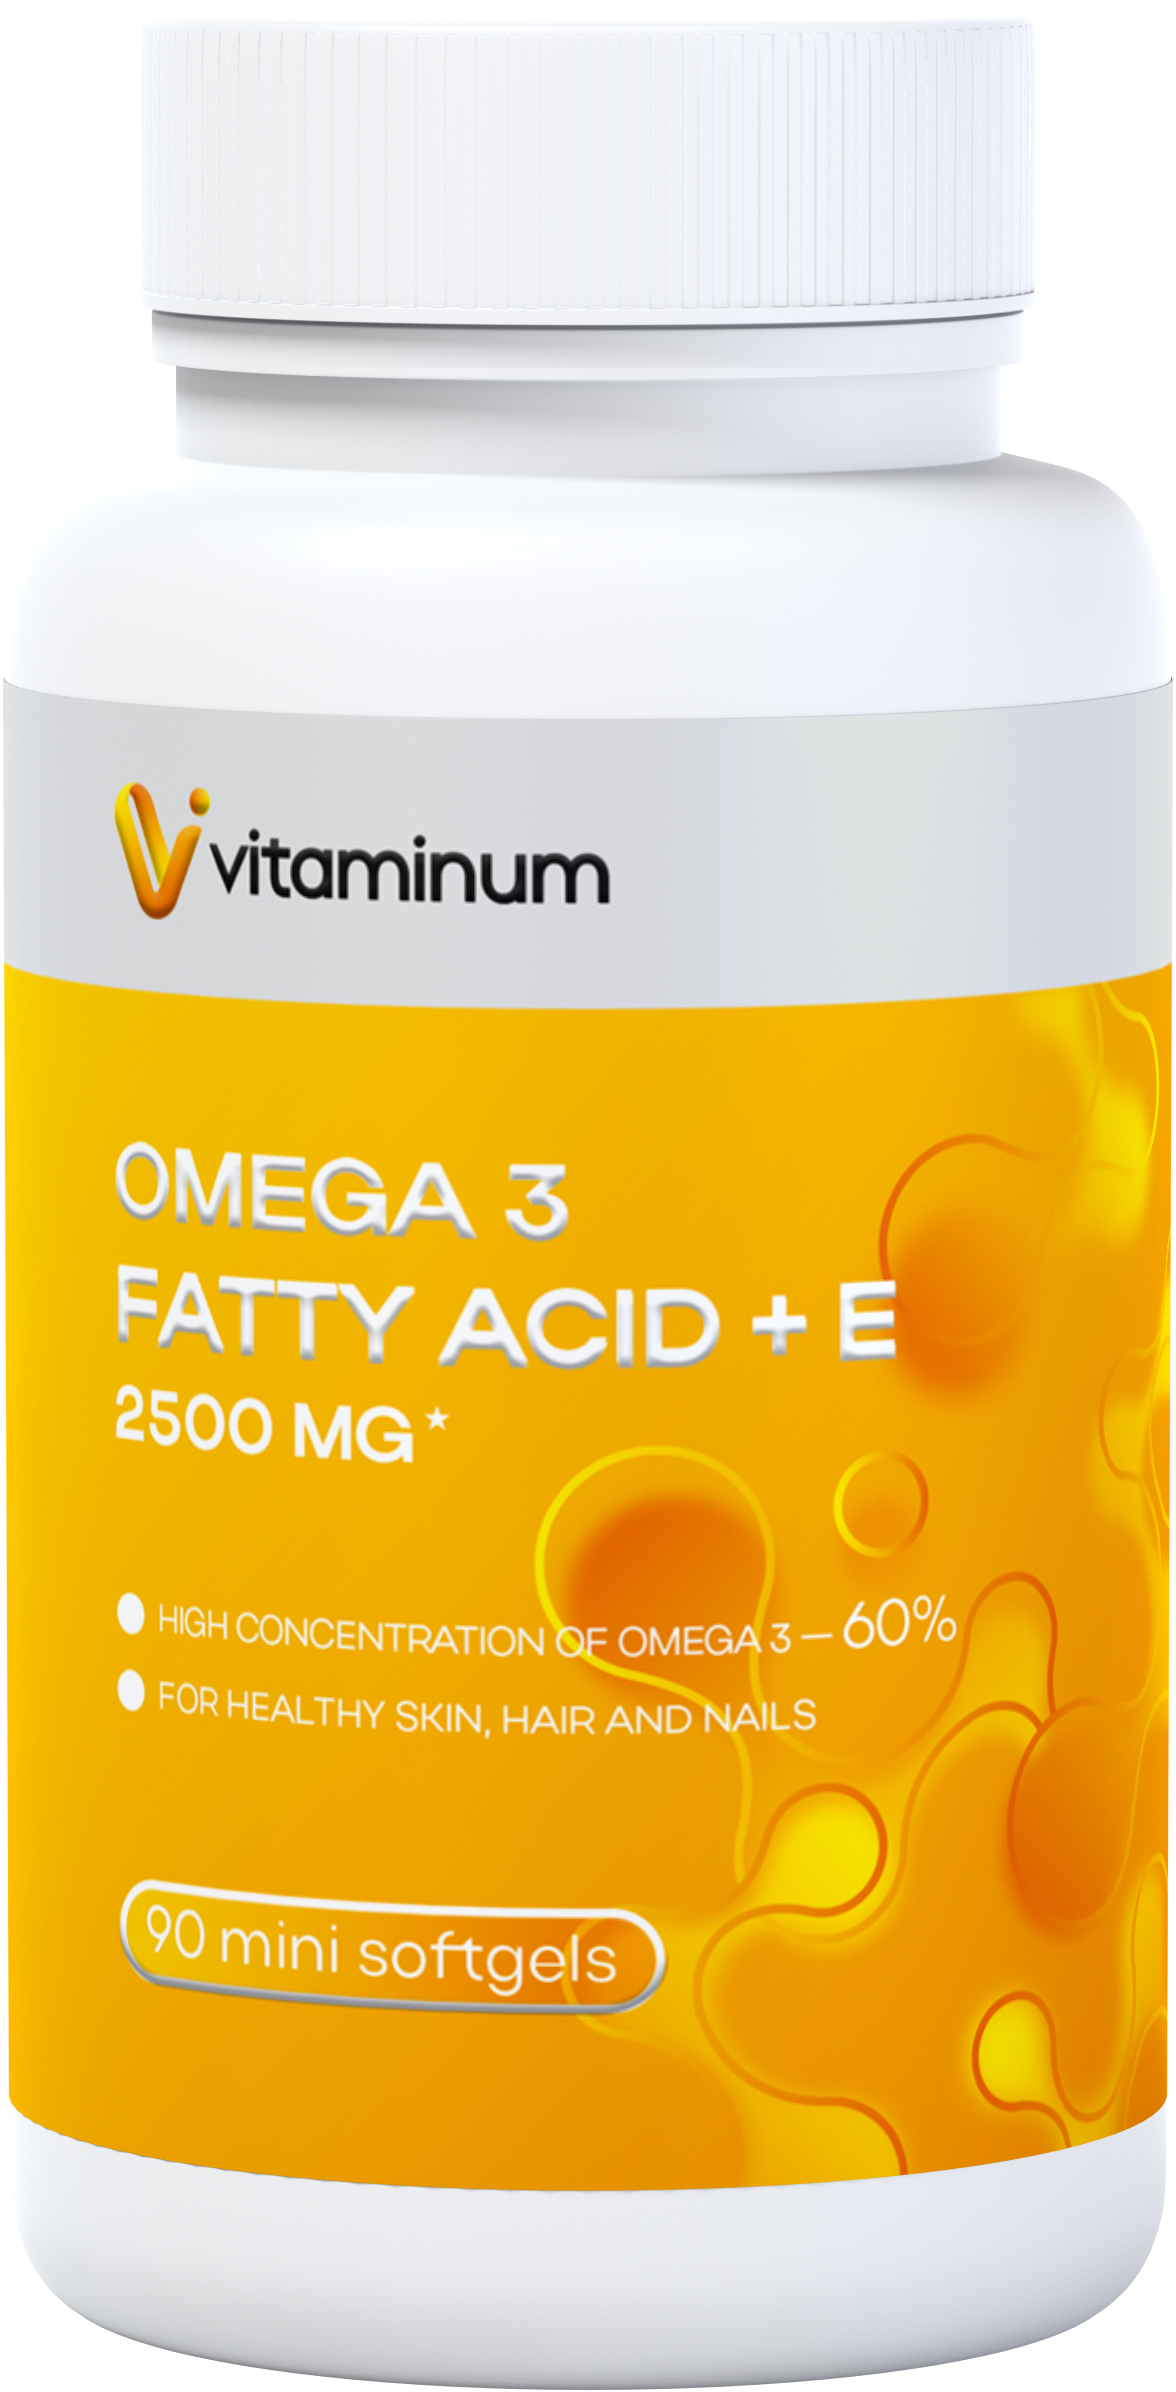  Vitaminum ОМЕГА 3 60% + витамин Е (2500 MG*) 90 капсул 700 мг   в Лангепасе